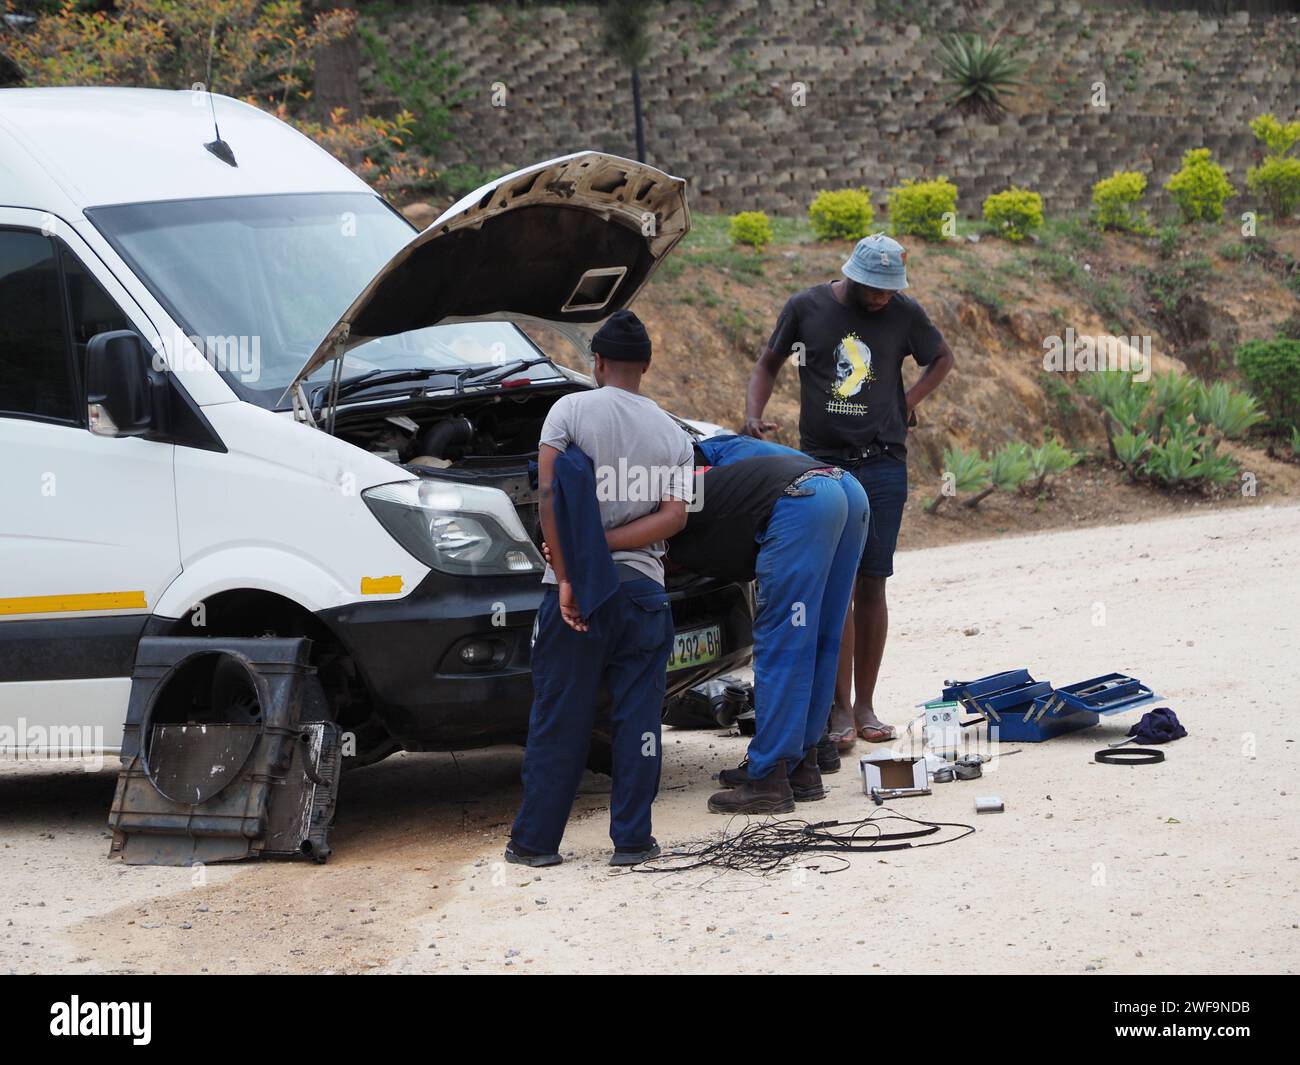 Una scena tipica in Africa, la riparazione di veicoli su strada. Questo furgone e' stato riparato vicino a Piggs Peak, eSwatini. Foto Stock